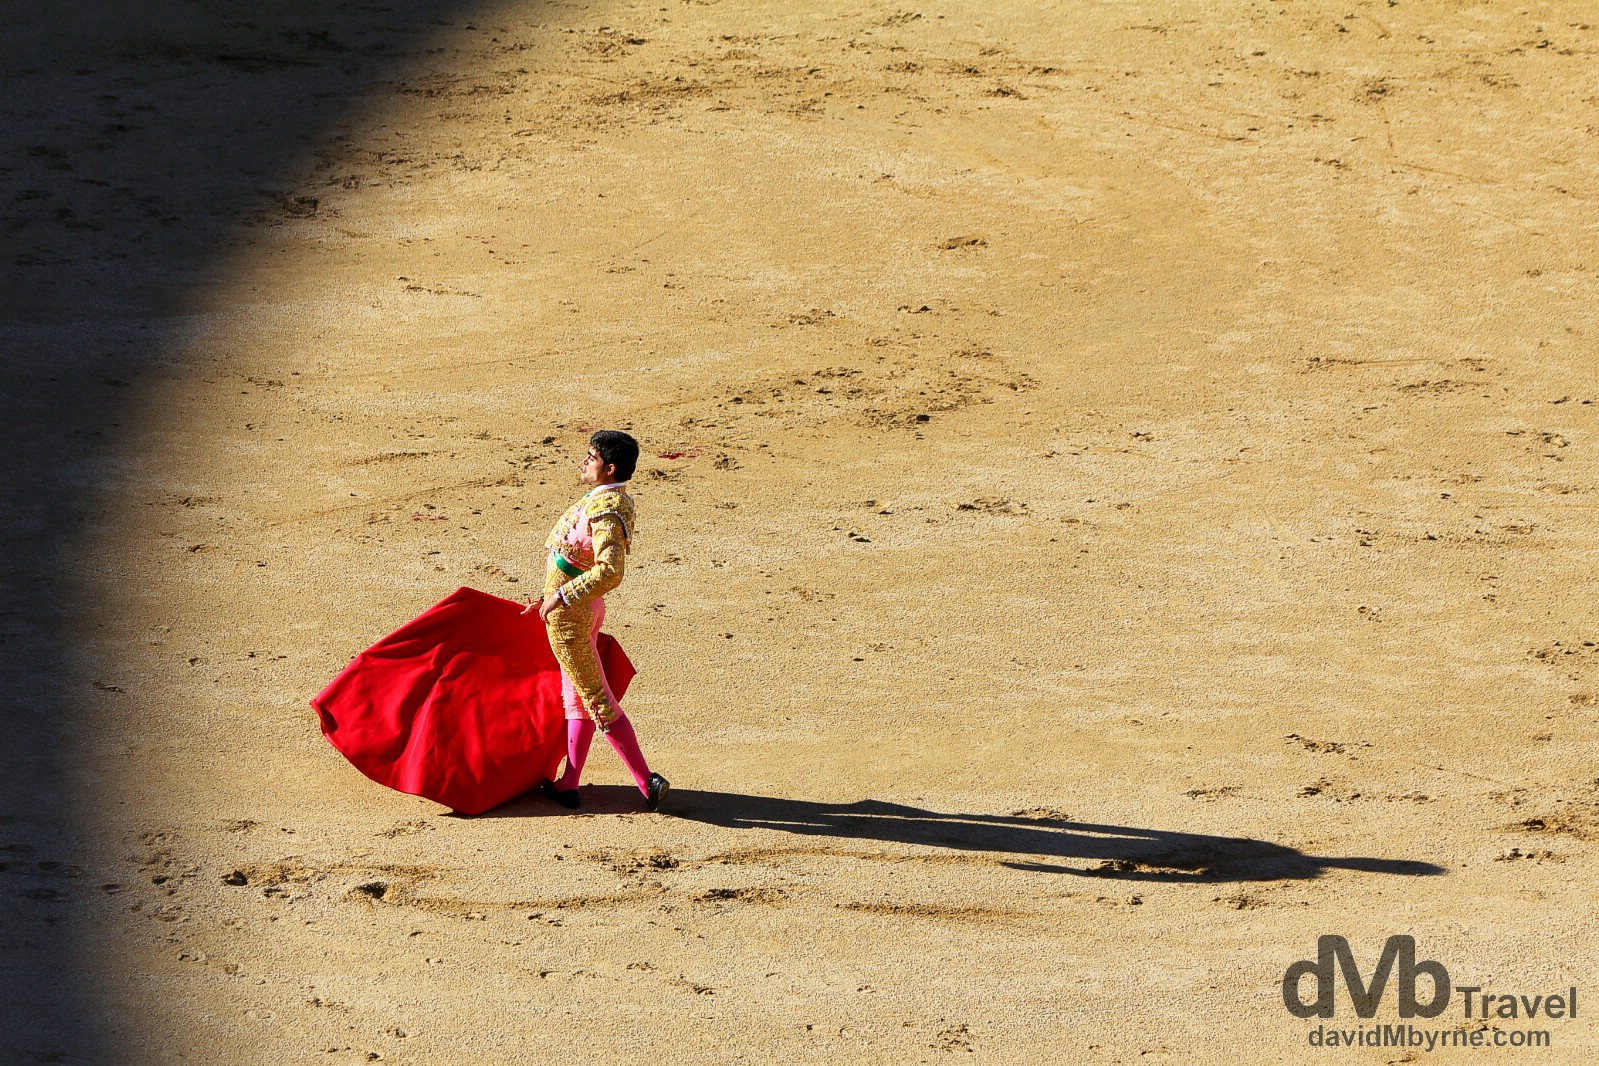 A Matador in action in Plaza de Toros, Las Ventas, Madrid, Spain. June 15th, 2014. 